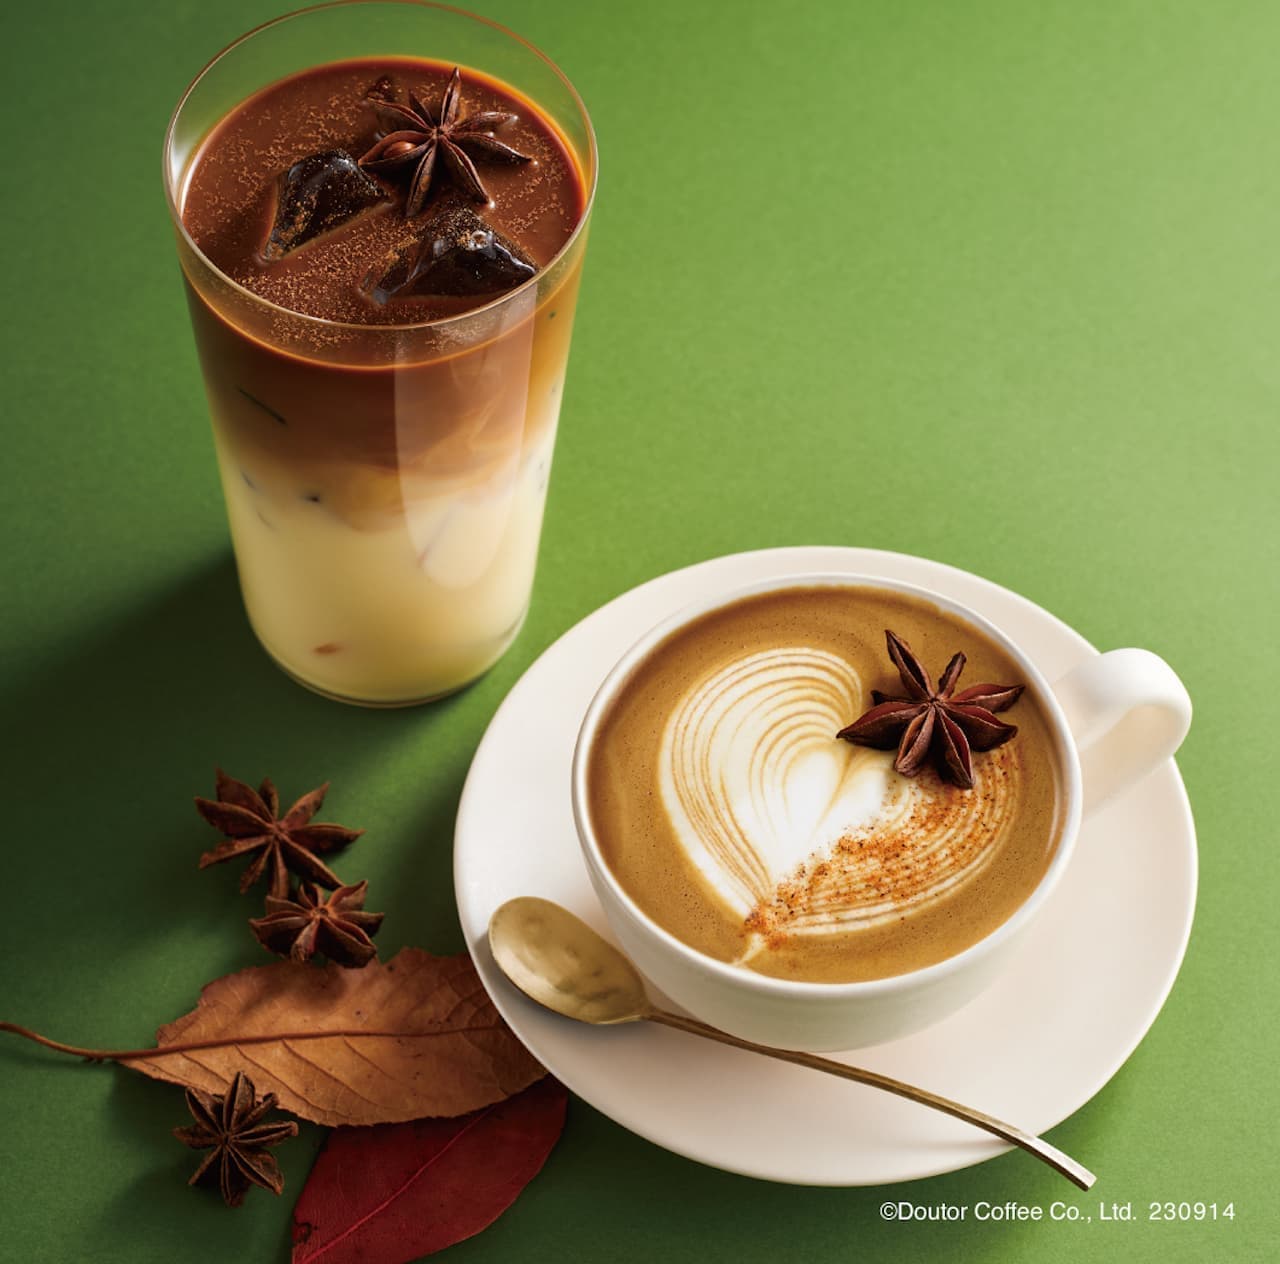 Excelsior Cafe "Spice-Scented Pumpkin Latte